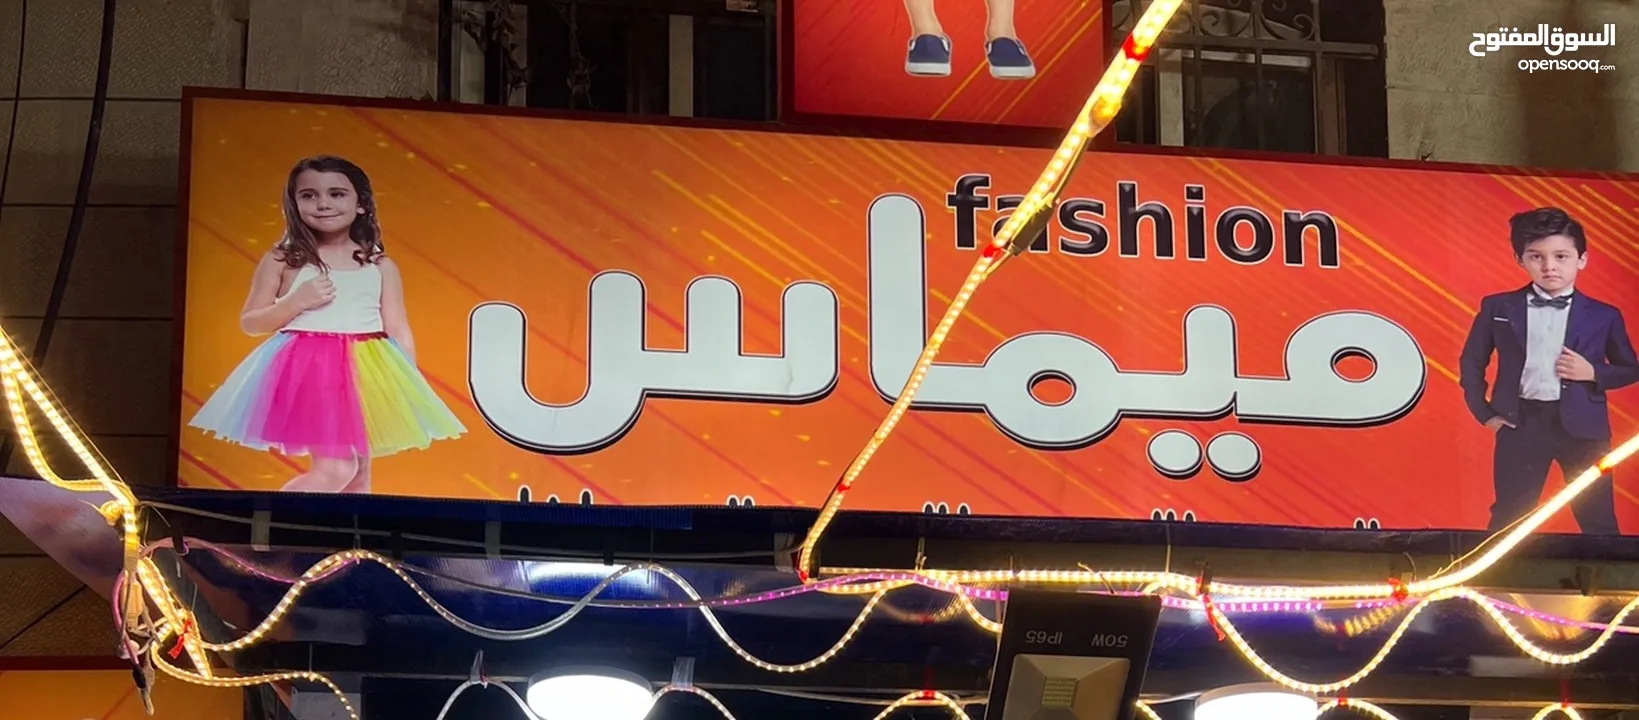 محل للبيع بسوق ابو عليا الرئيسي مقابل مخابز نور الشام